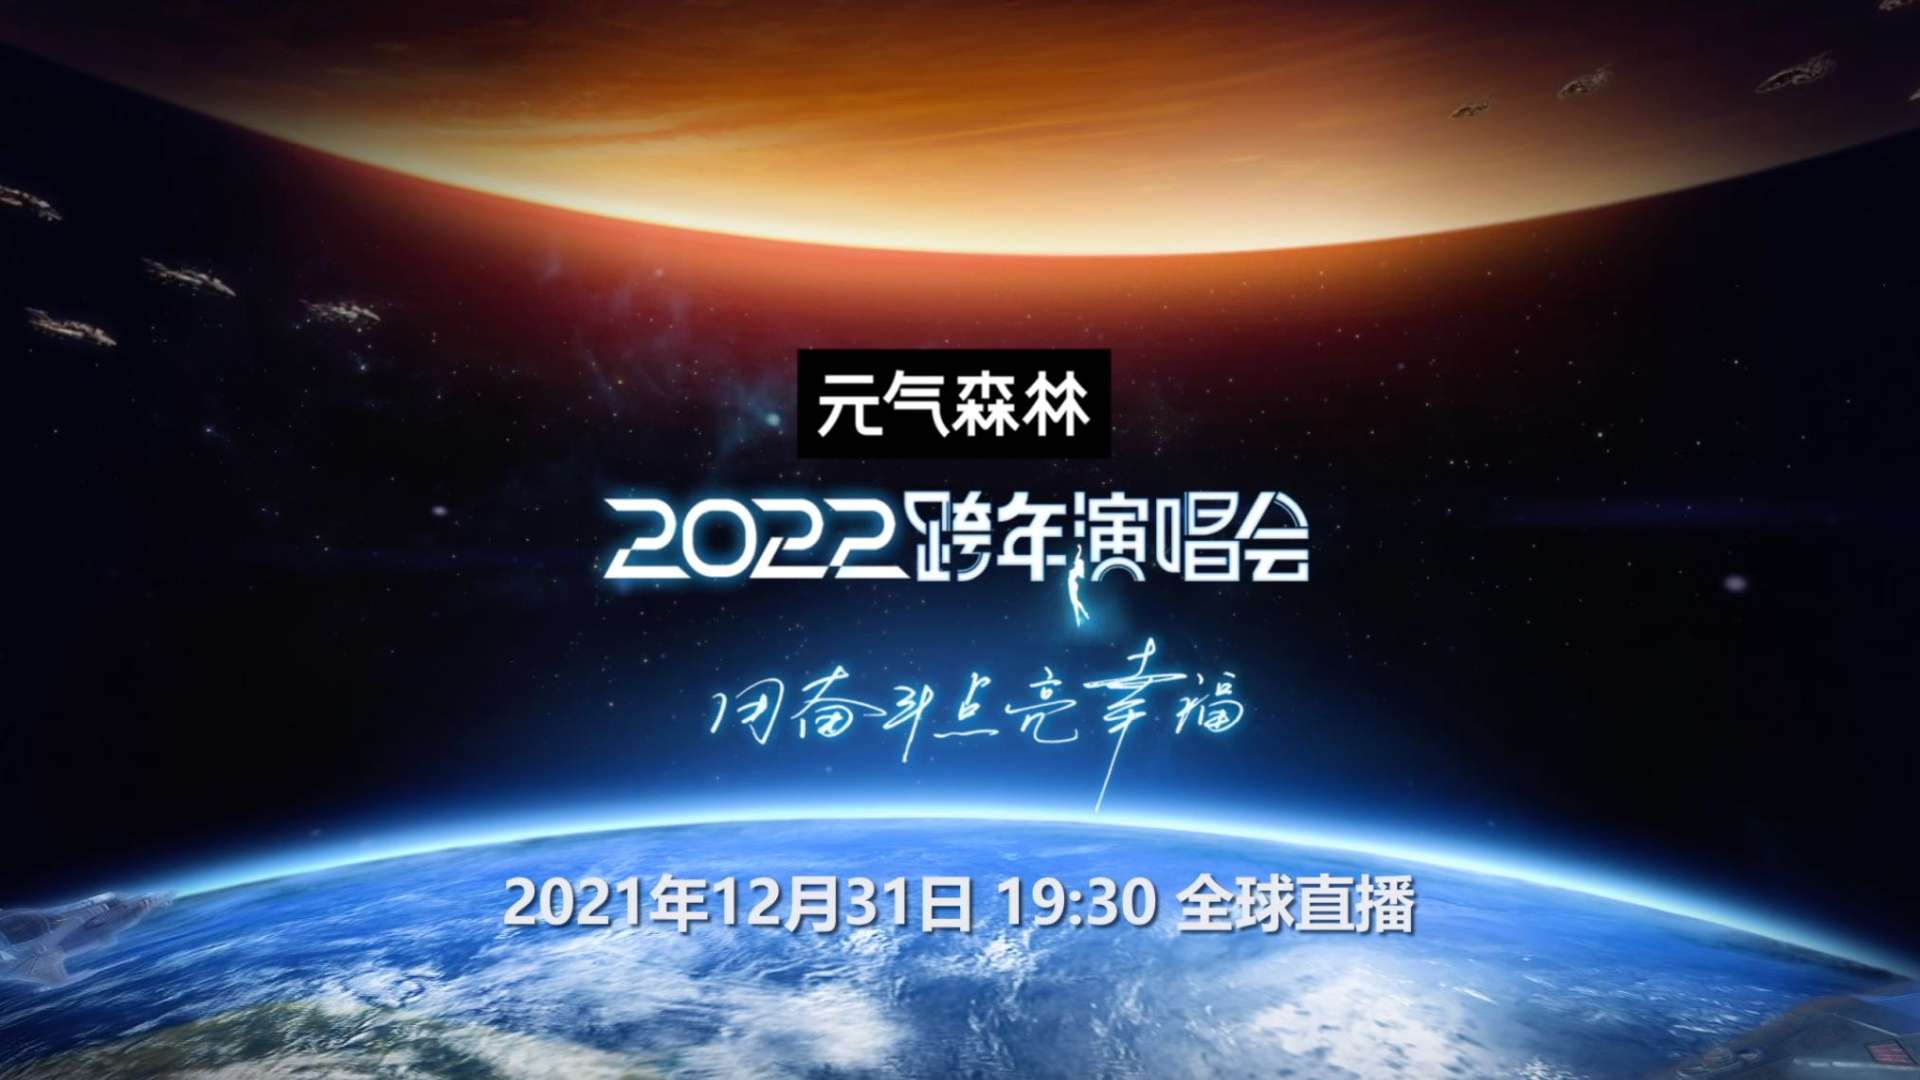 2021-2022江苏卫视跨年概念宣传片 【耳机vr环绕声版本】